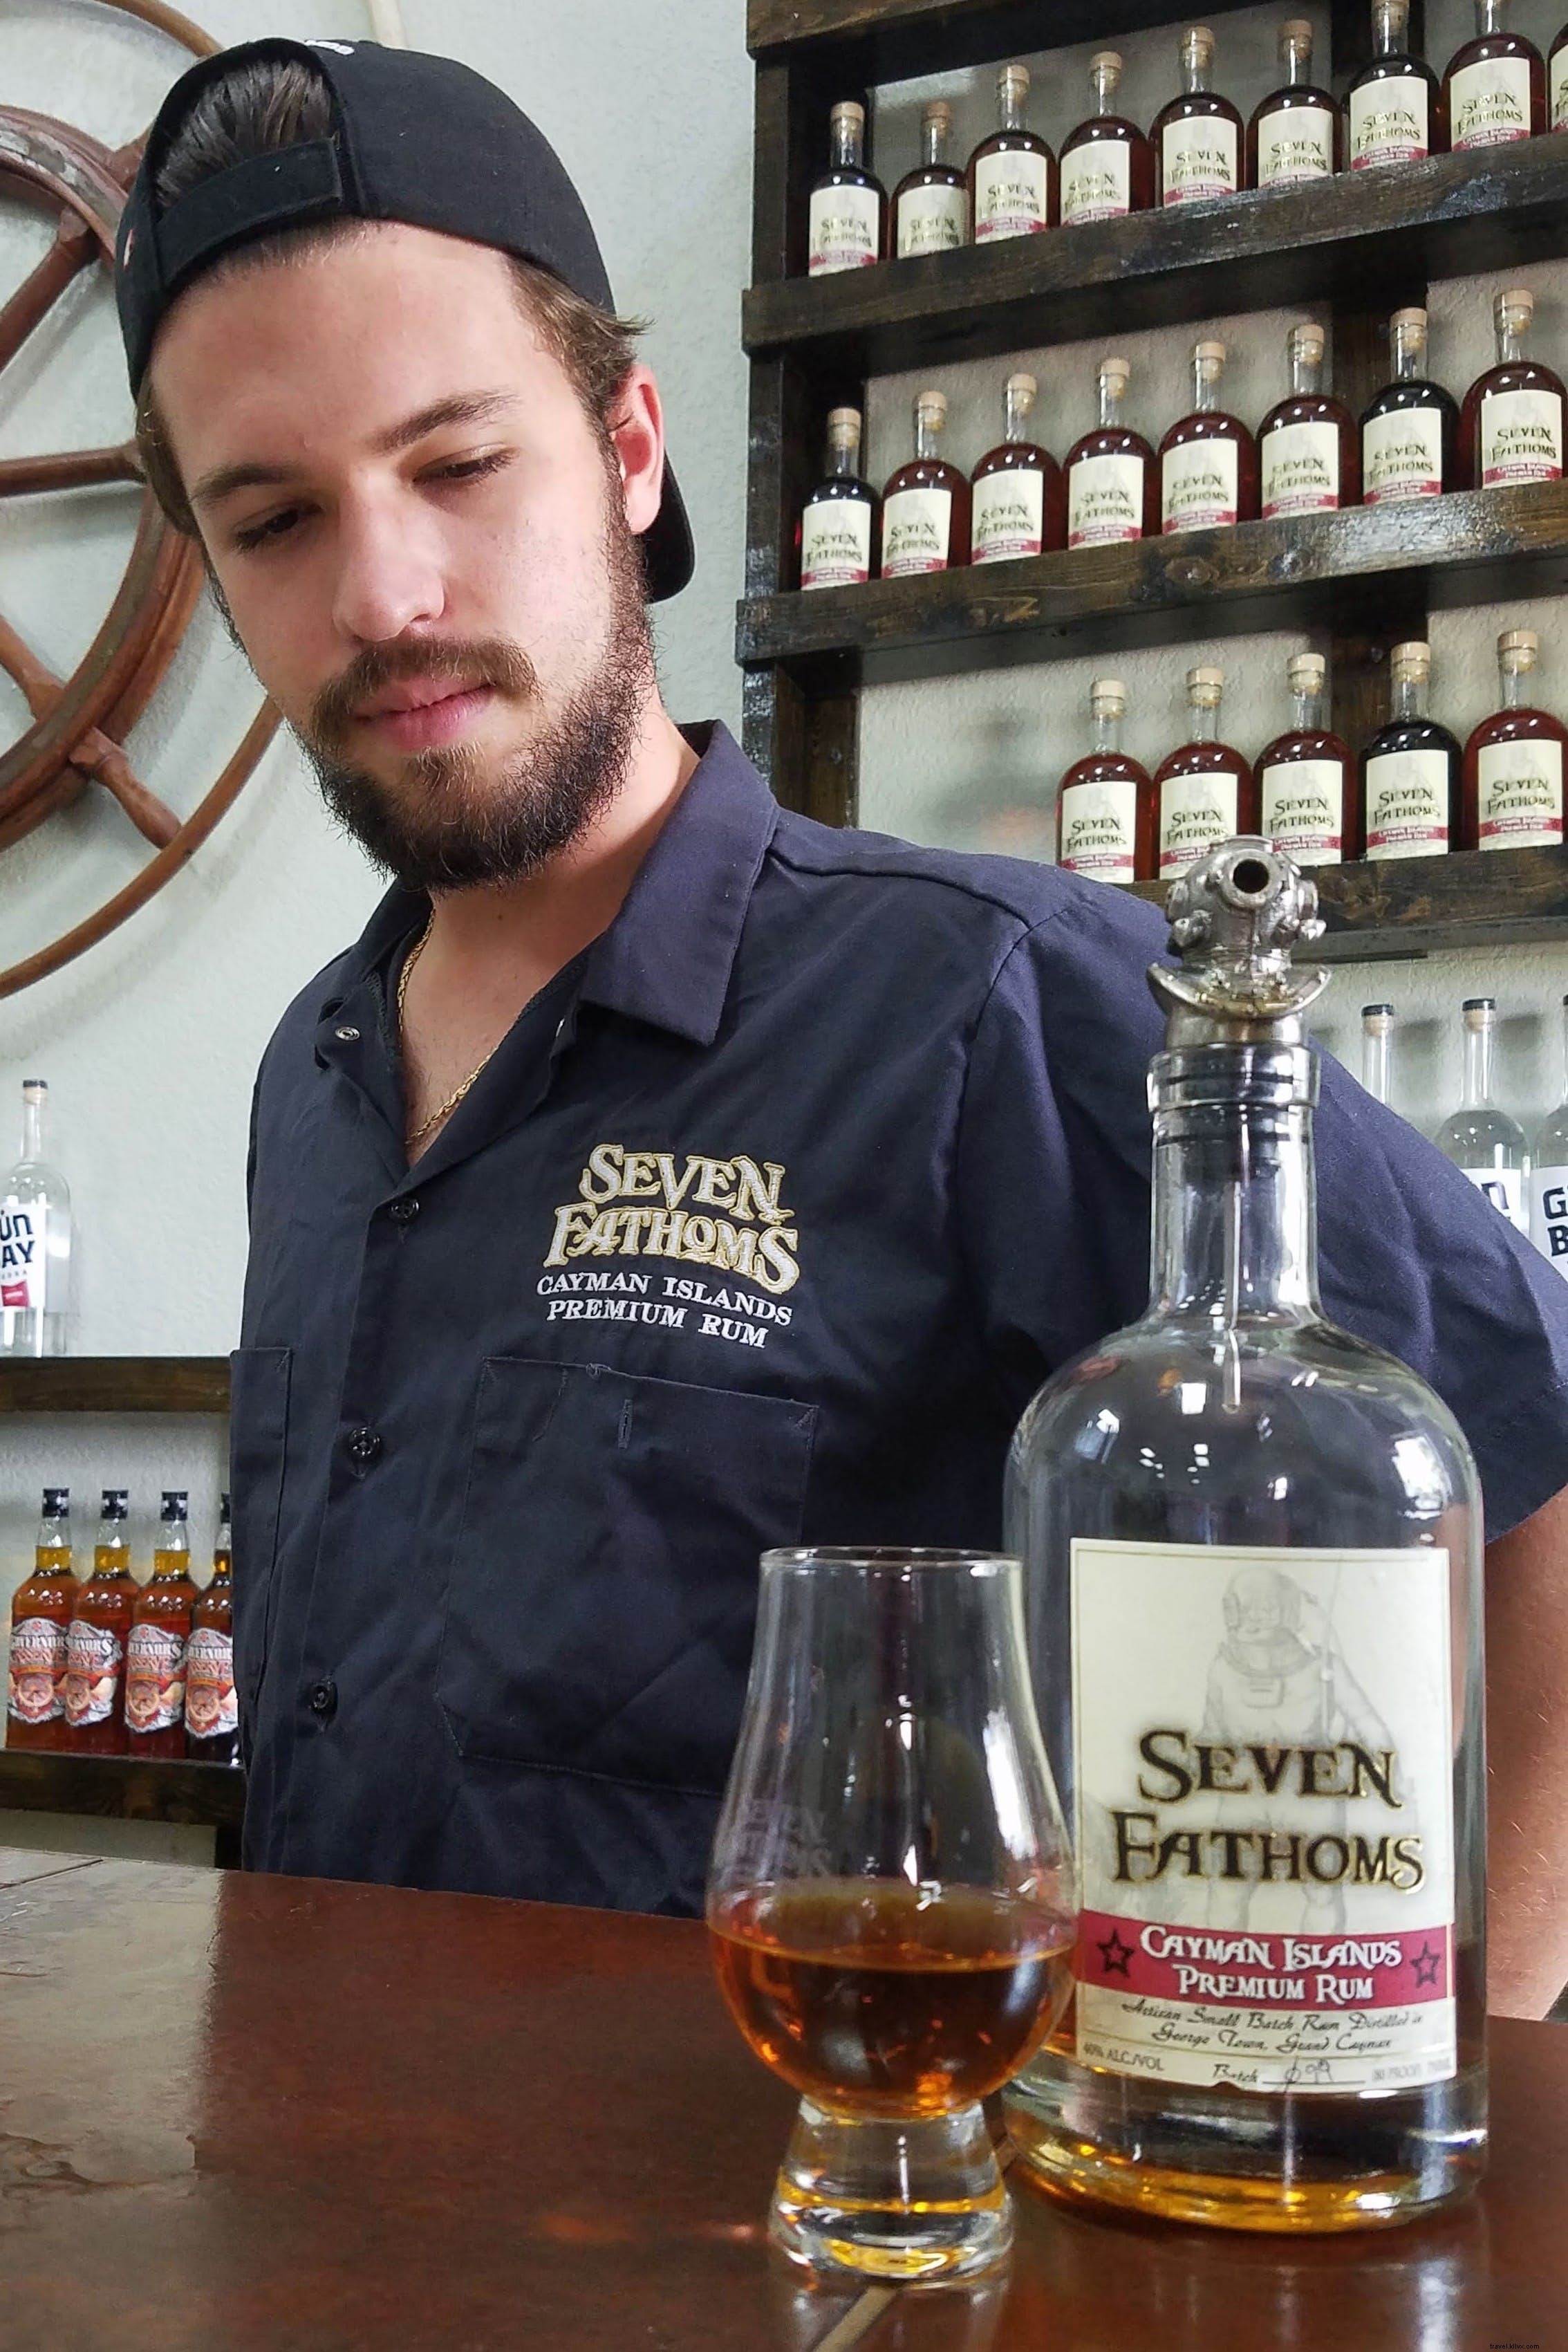 Goditi un vero tesoro sommerso in questa distilleria delle Isole Cayman 